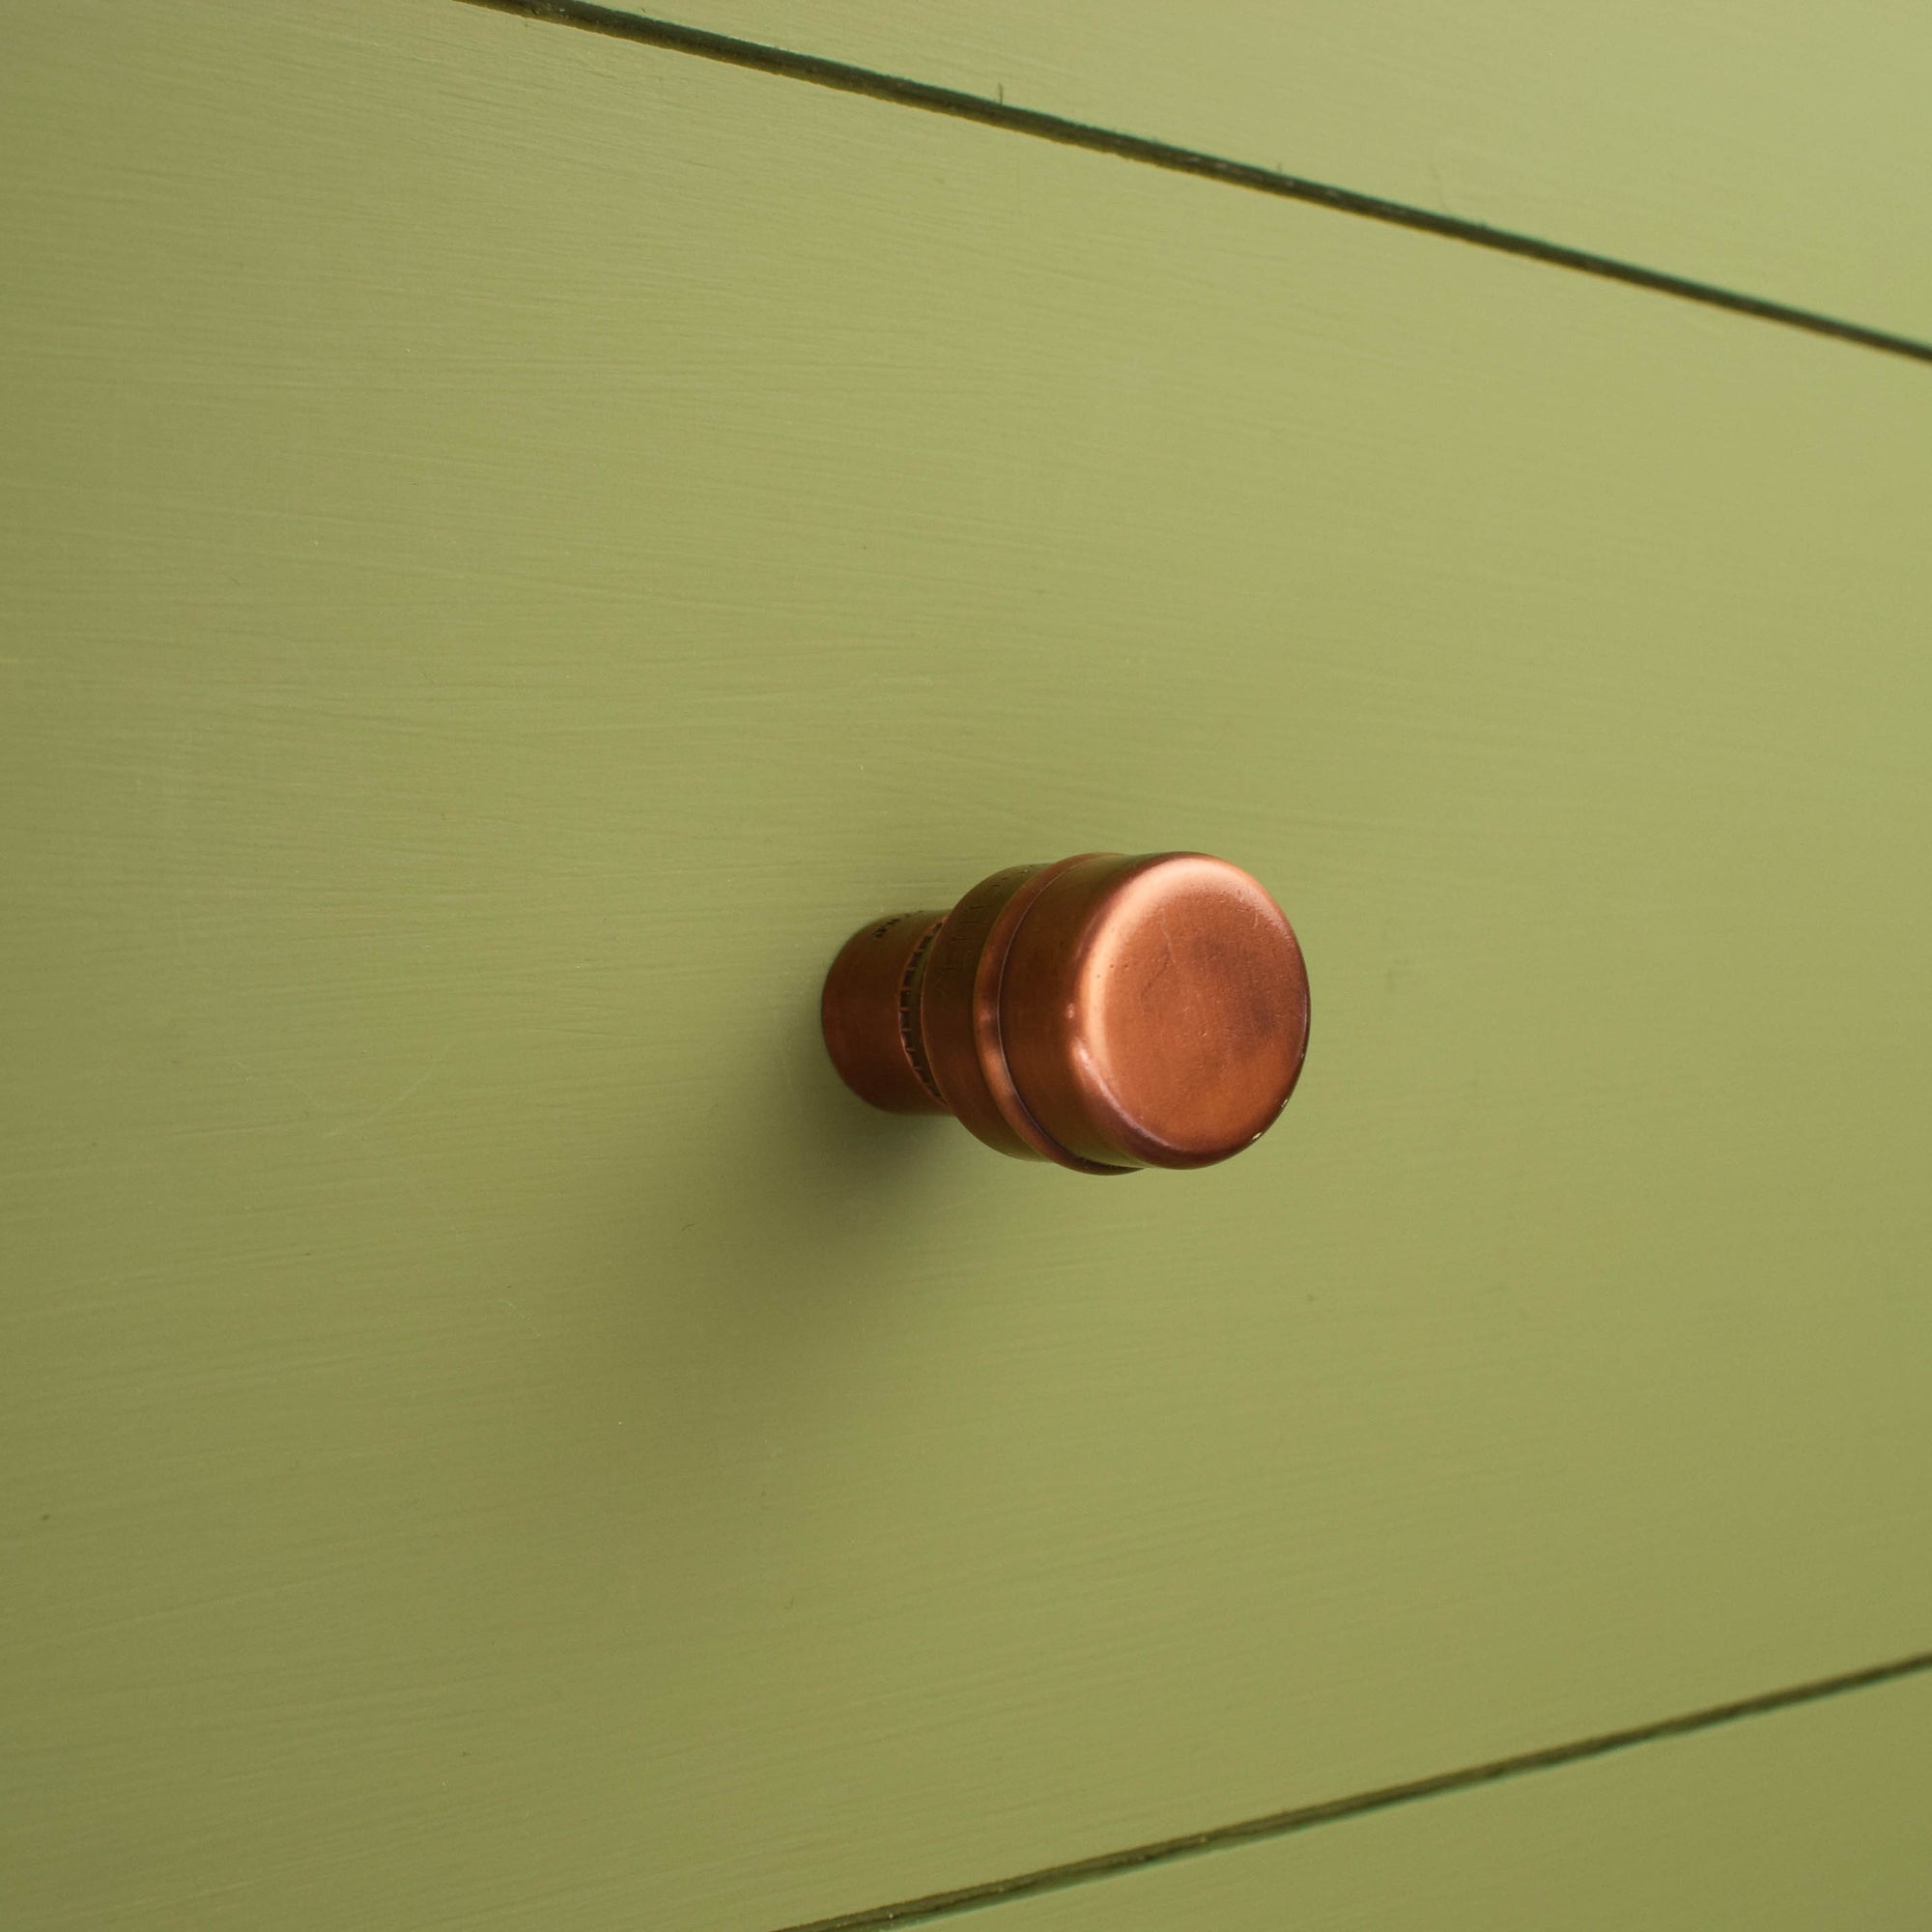 Copper Knob - Raised - Aged - Proper Copper Design